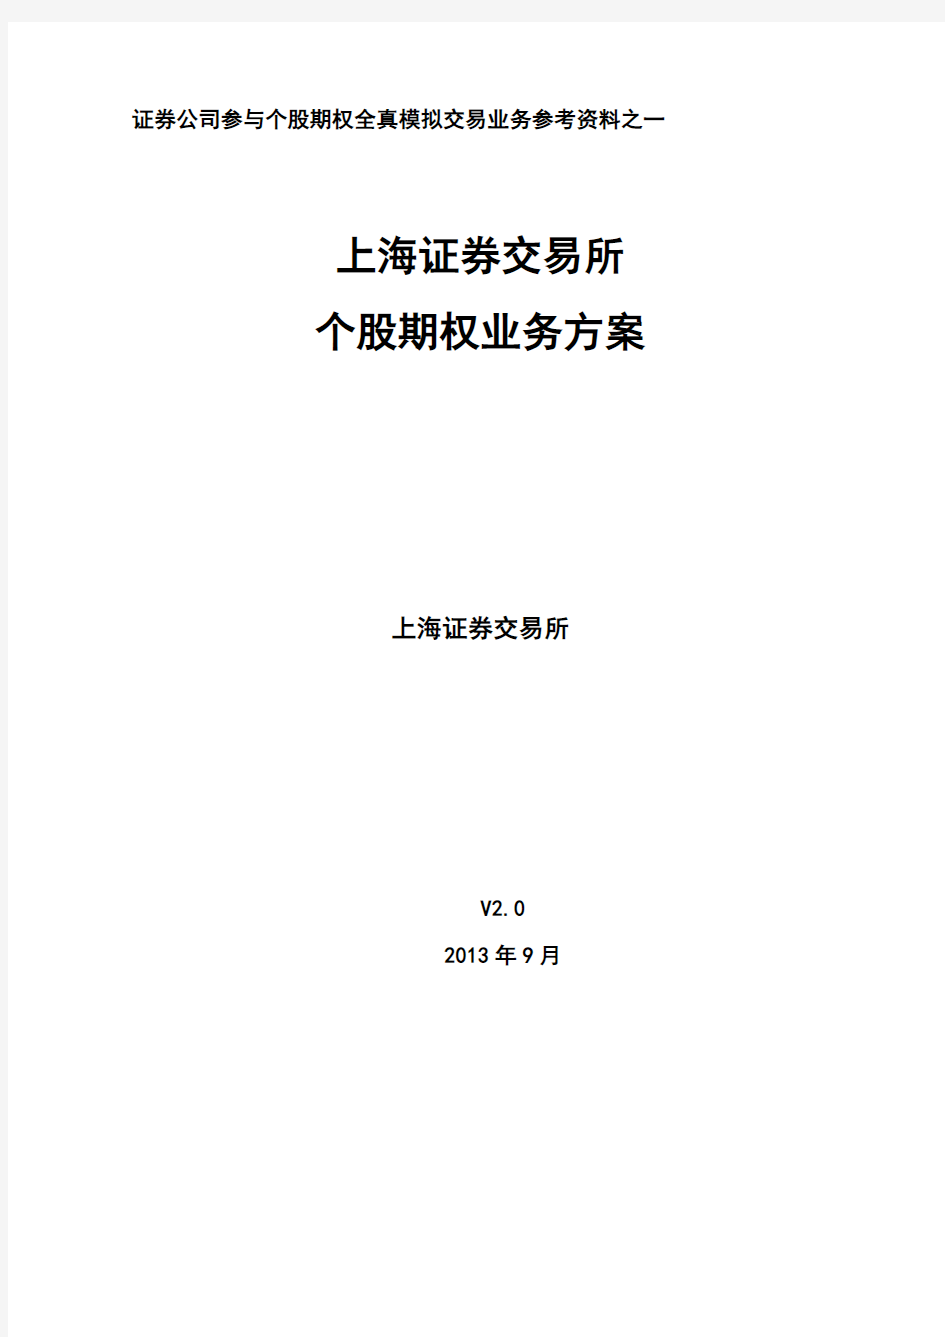 上海证券交易所个股期权业务方案(doc 页68)